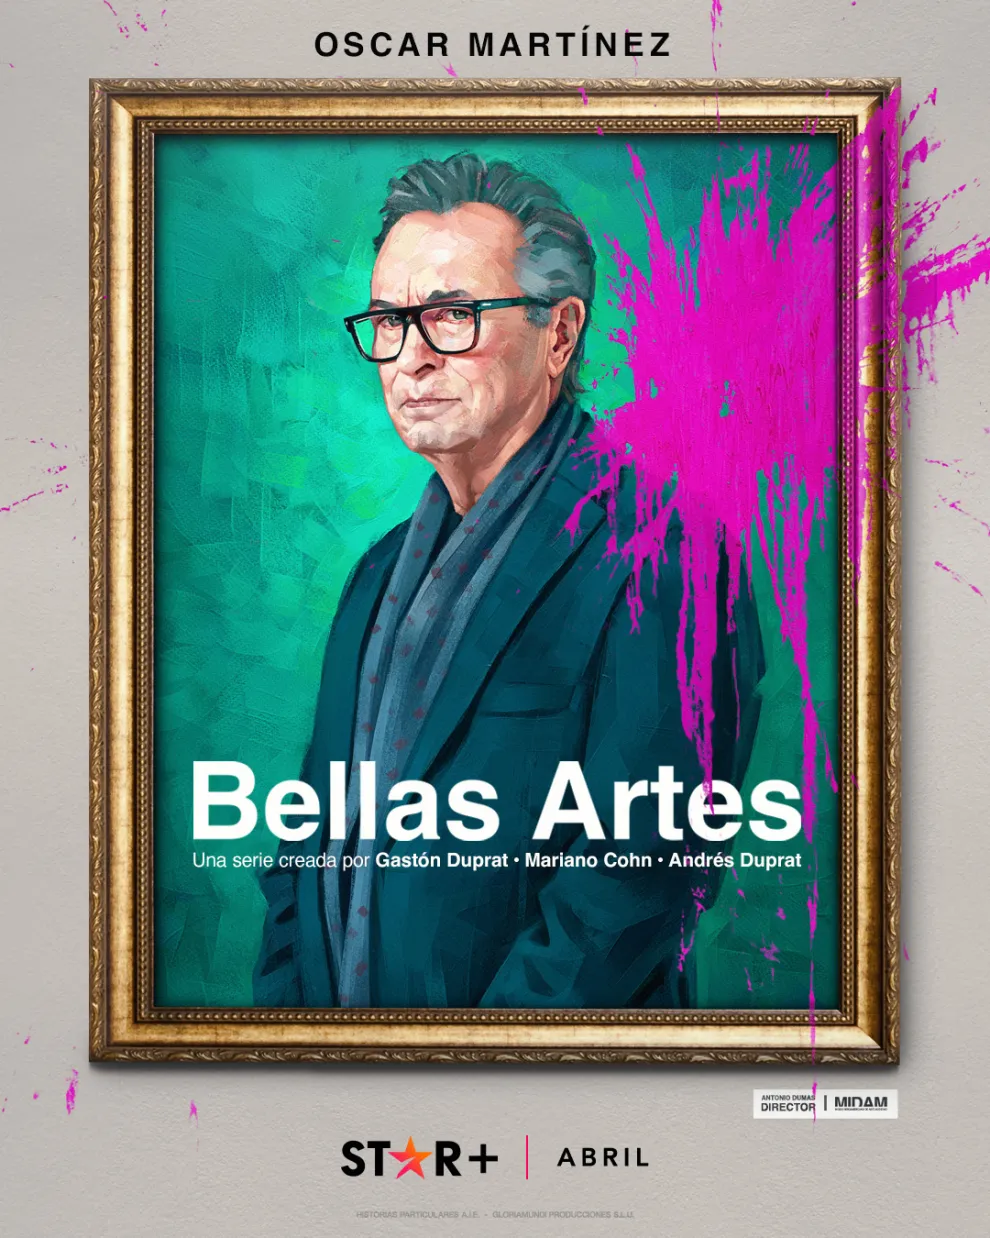 Poster de la serie Bellas Artes, con Oscar Martínez.